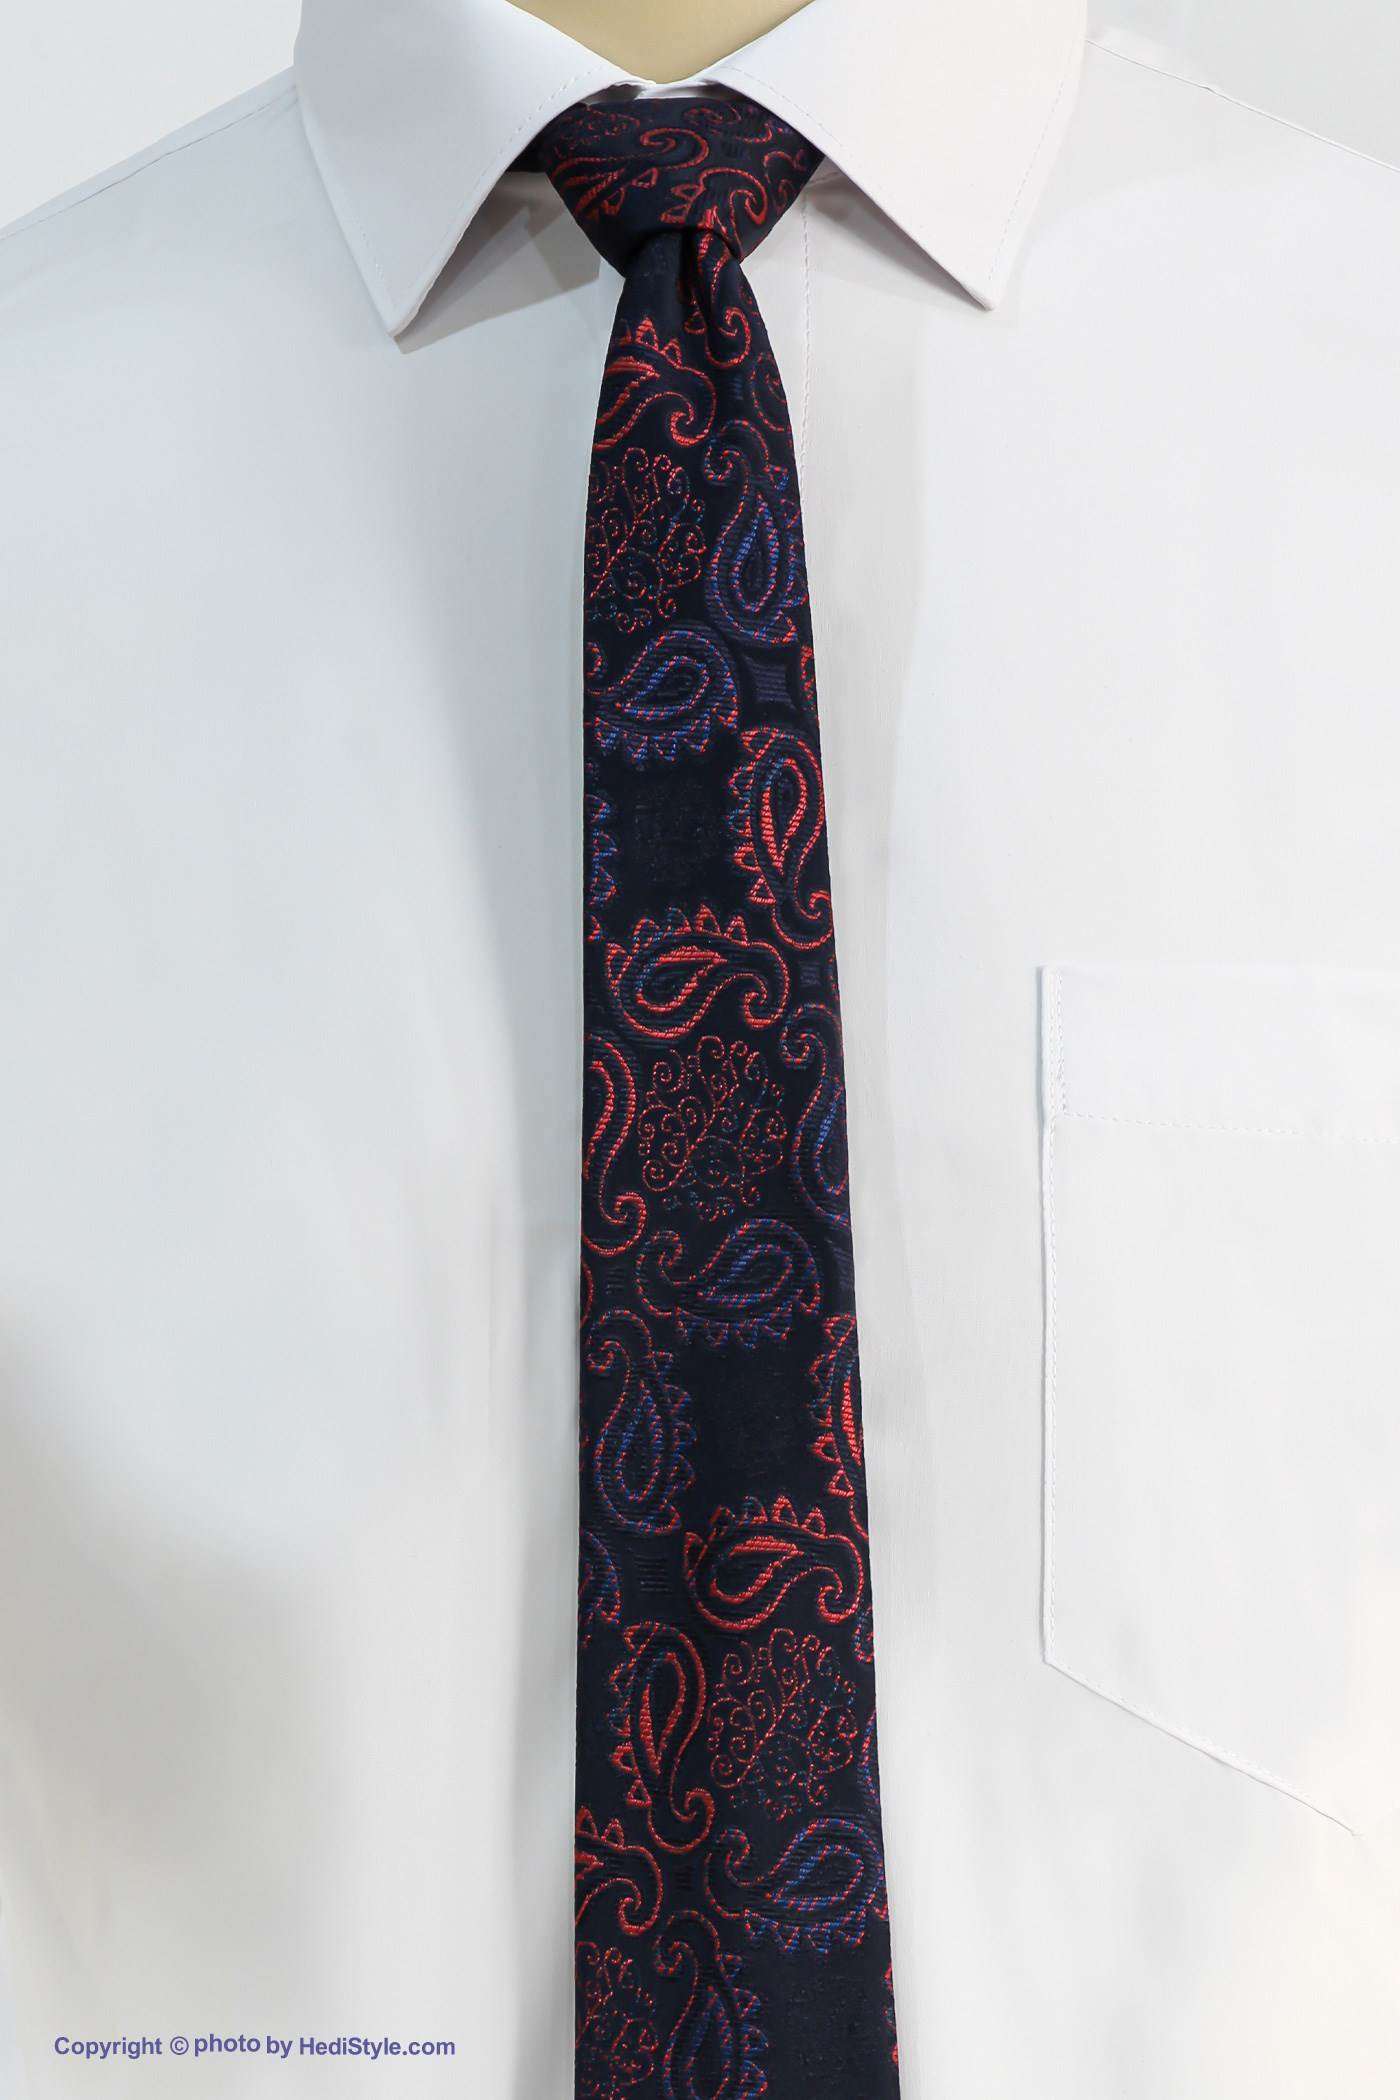 Tie and leather set of crimson crimson jacquard design code T01-07-1230C